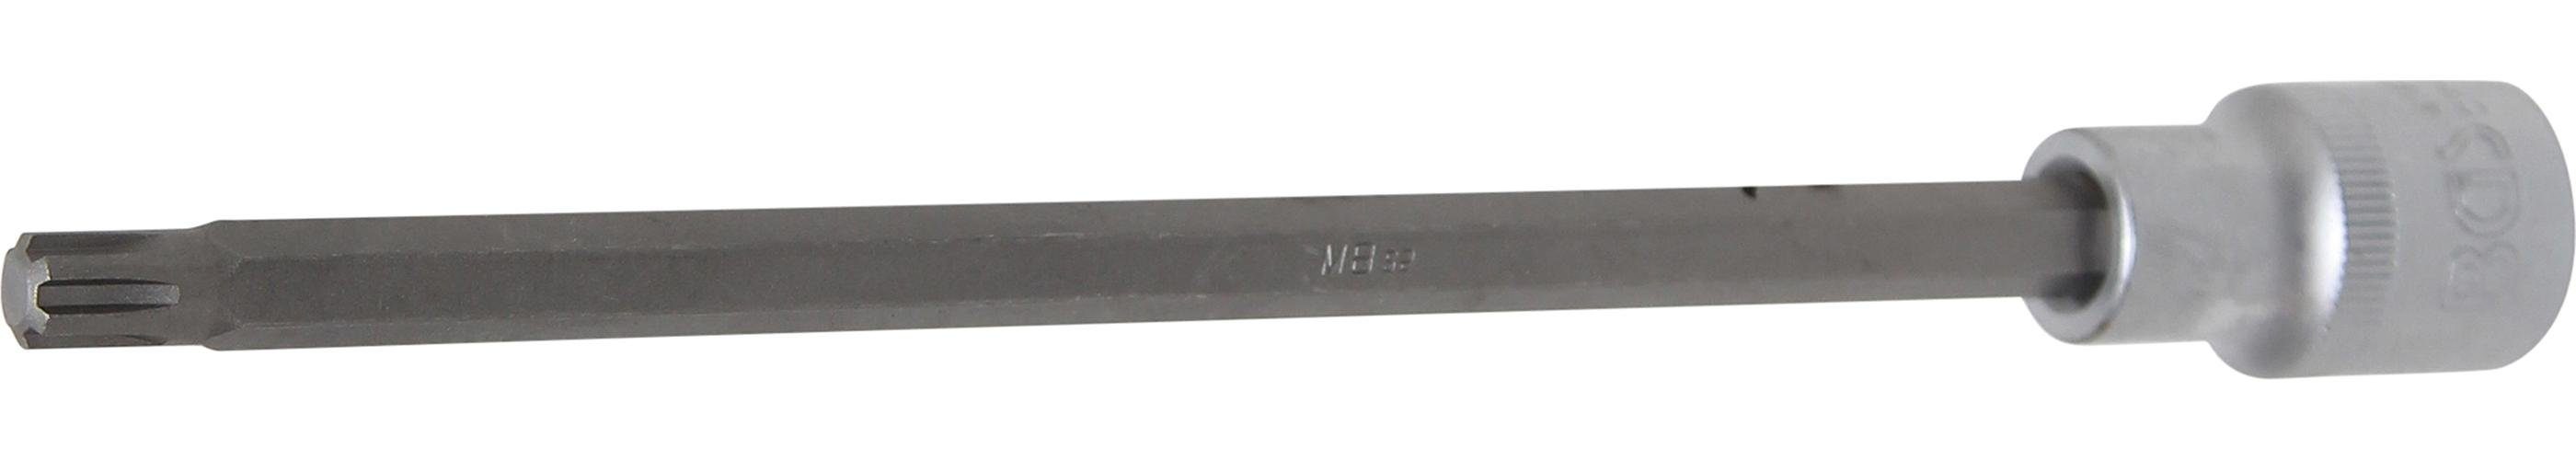 Bit-Einsatz, (für Bit-Schraubendreher Innenvierkant M8 mm, 200 BGS RIBE) (1/2), technic mm 12,5 Keil-Profil Länge Antrieb